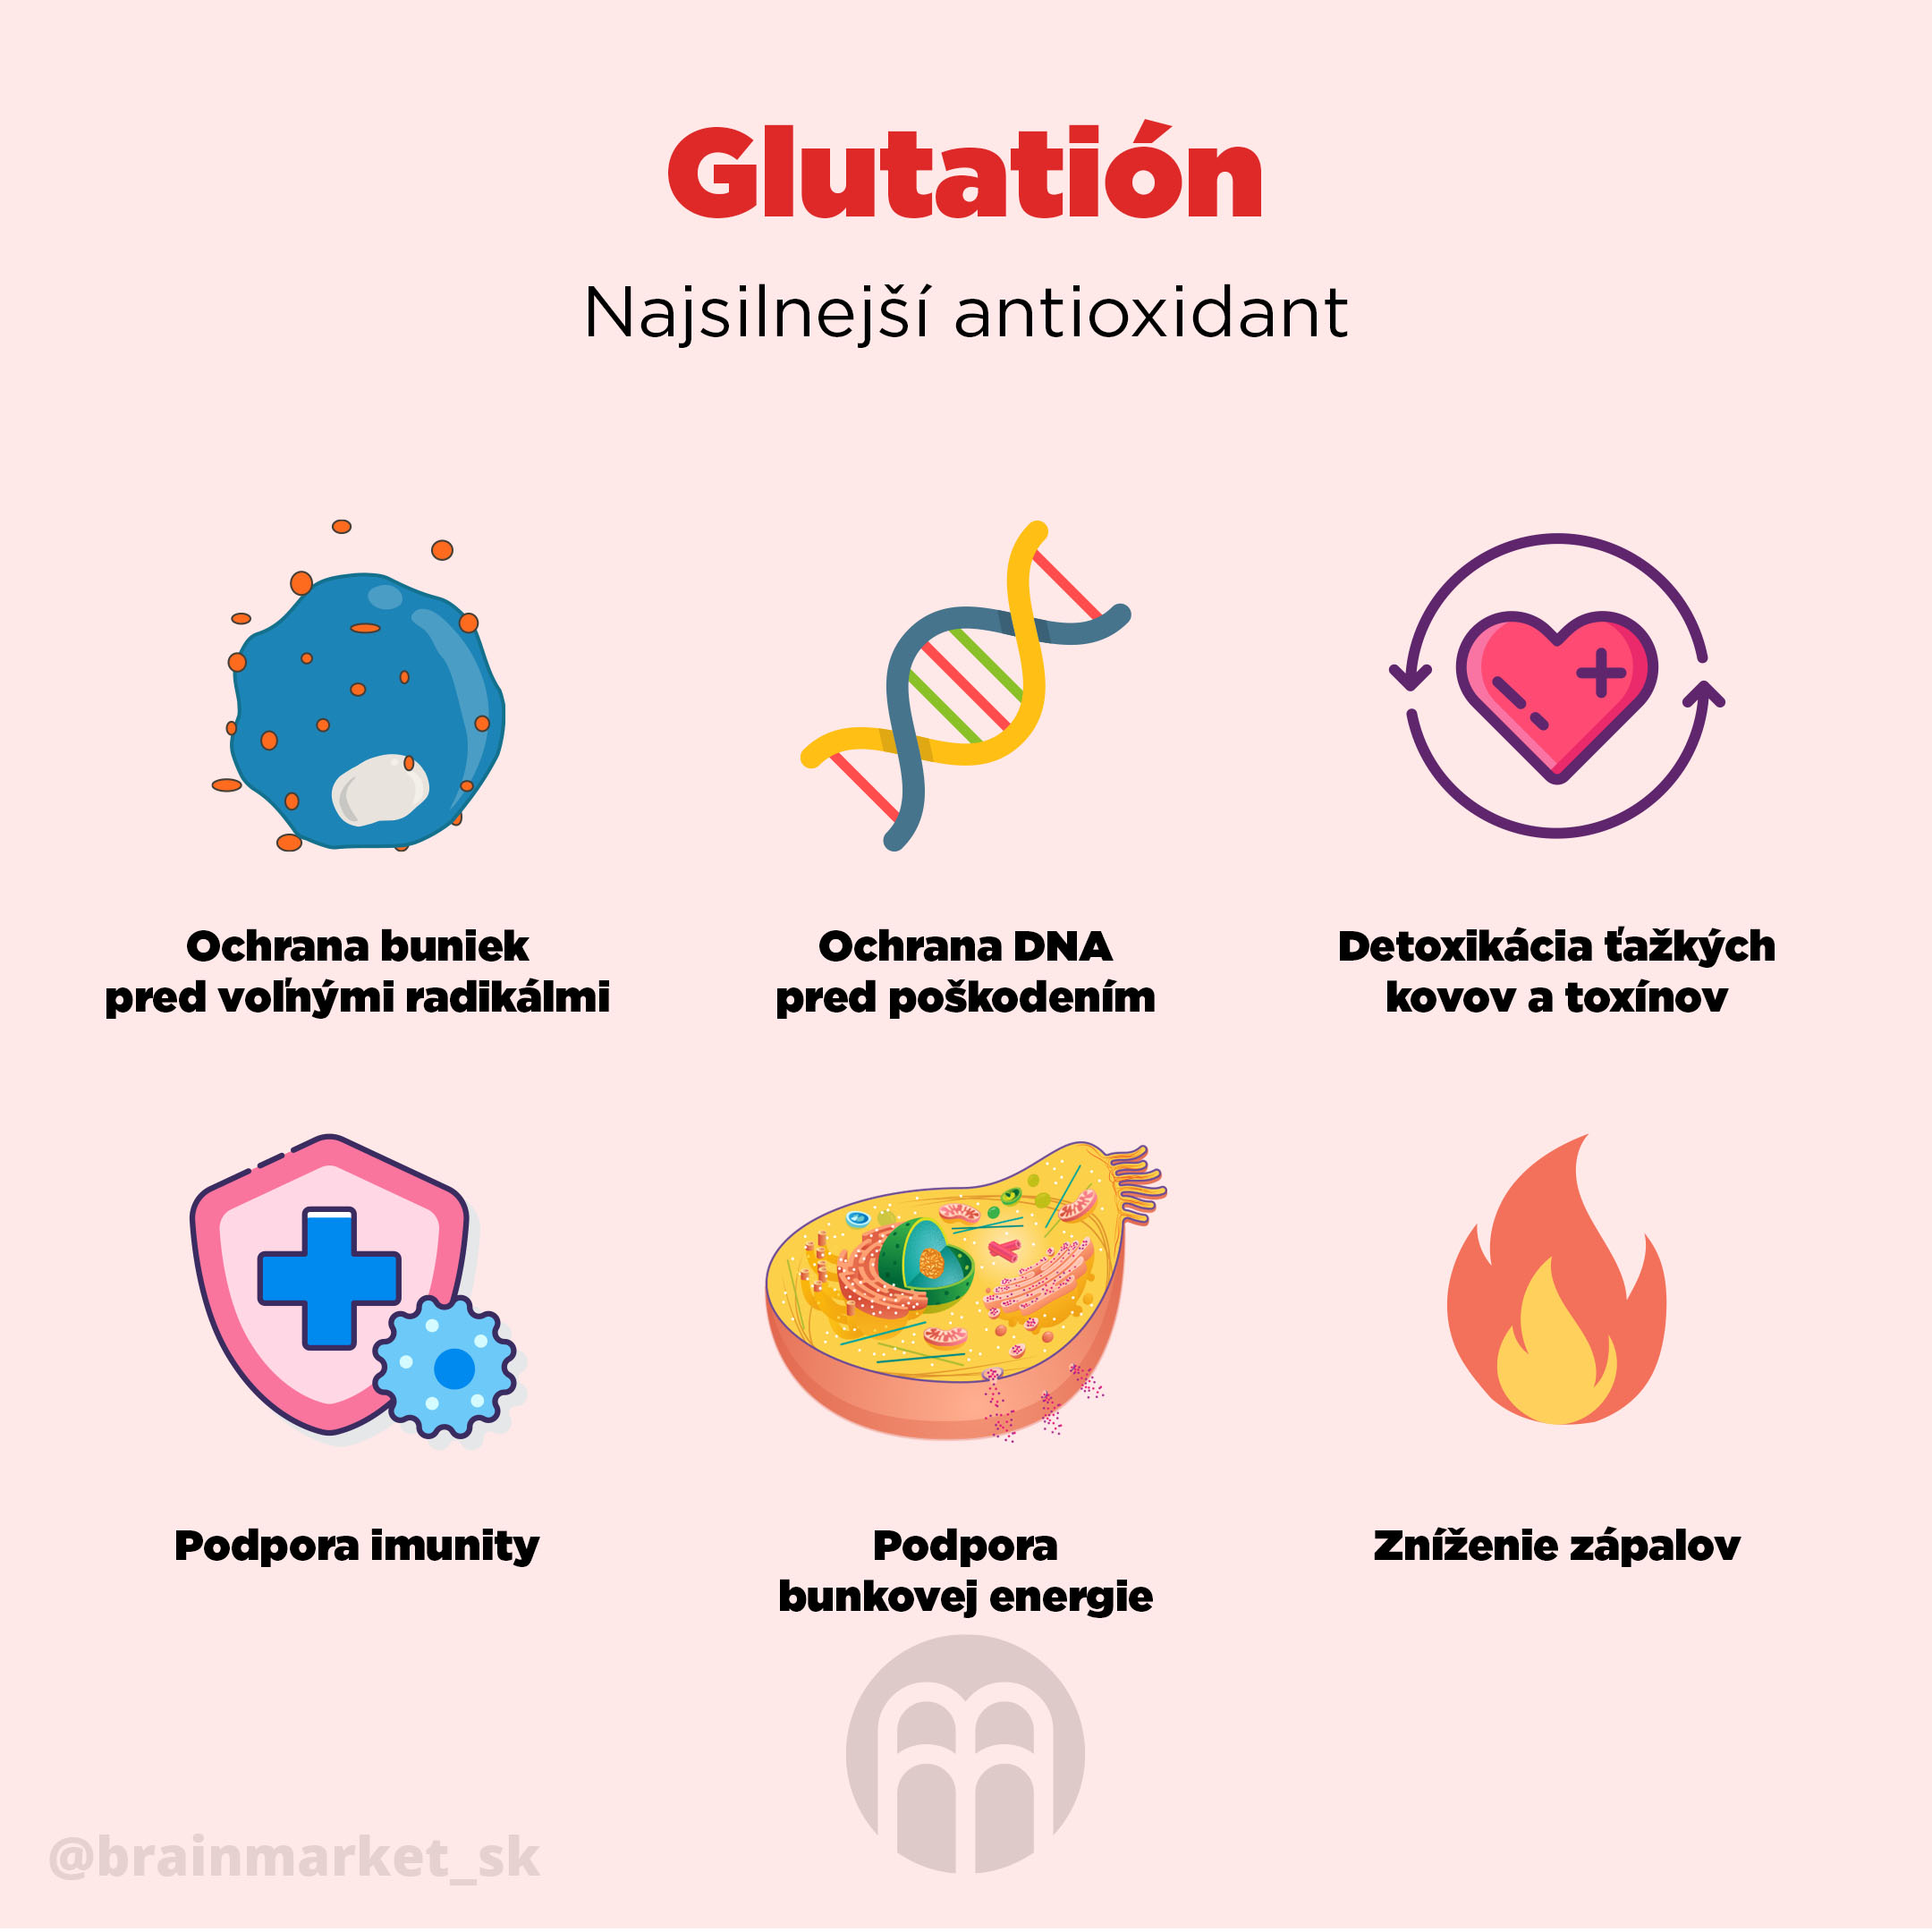 Zbavte sa toxínov a uzdravte bunky s kráľom antioxidantov Glutatiónom